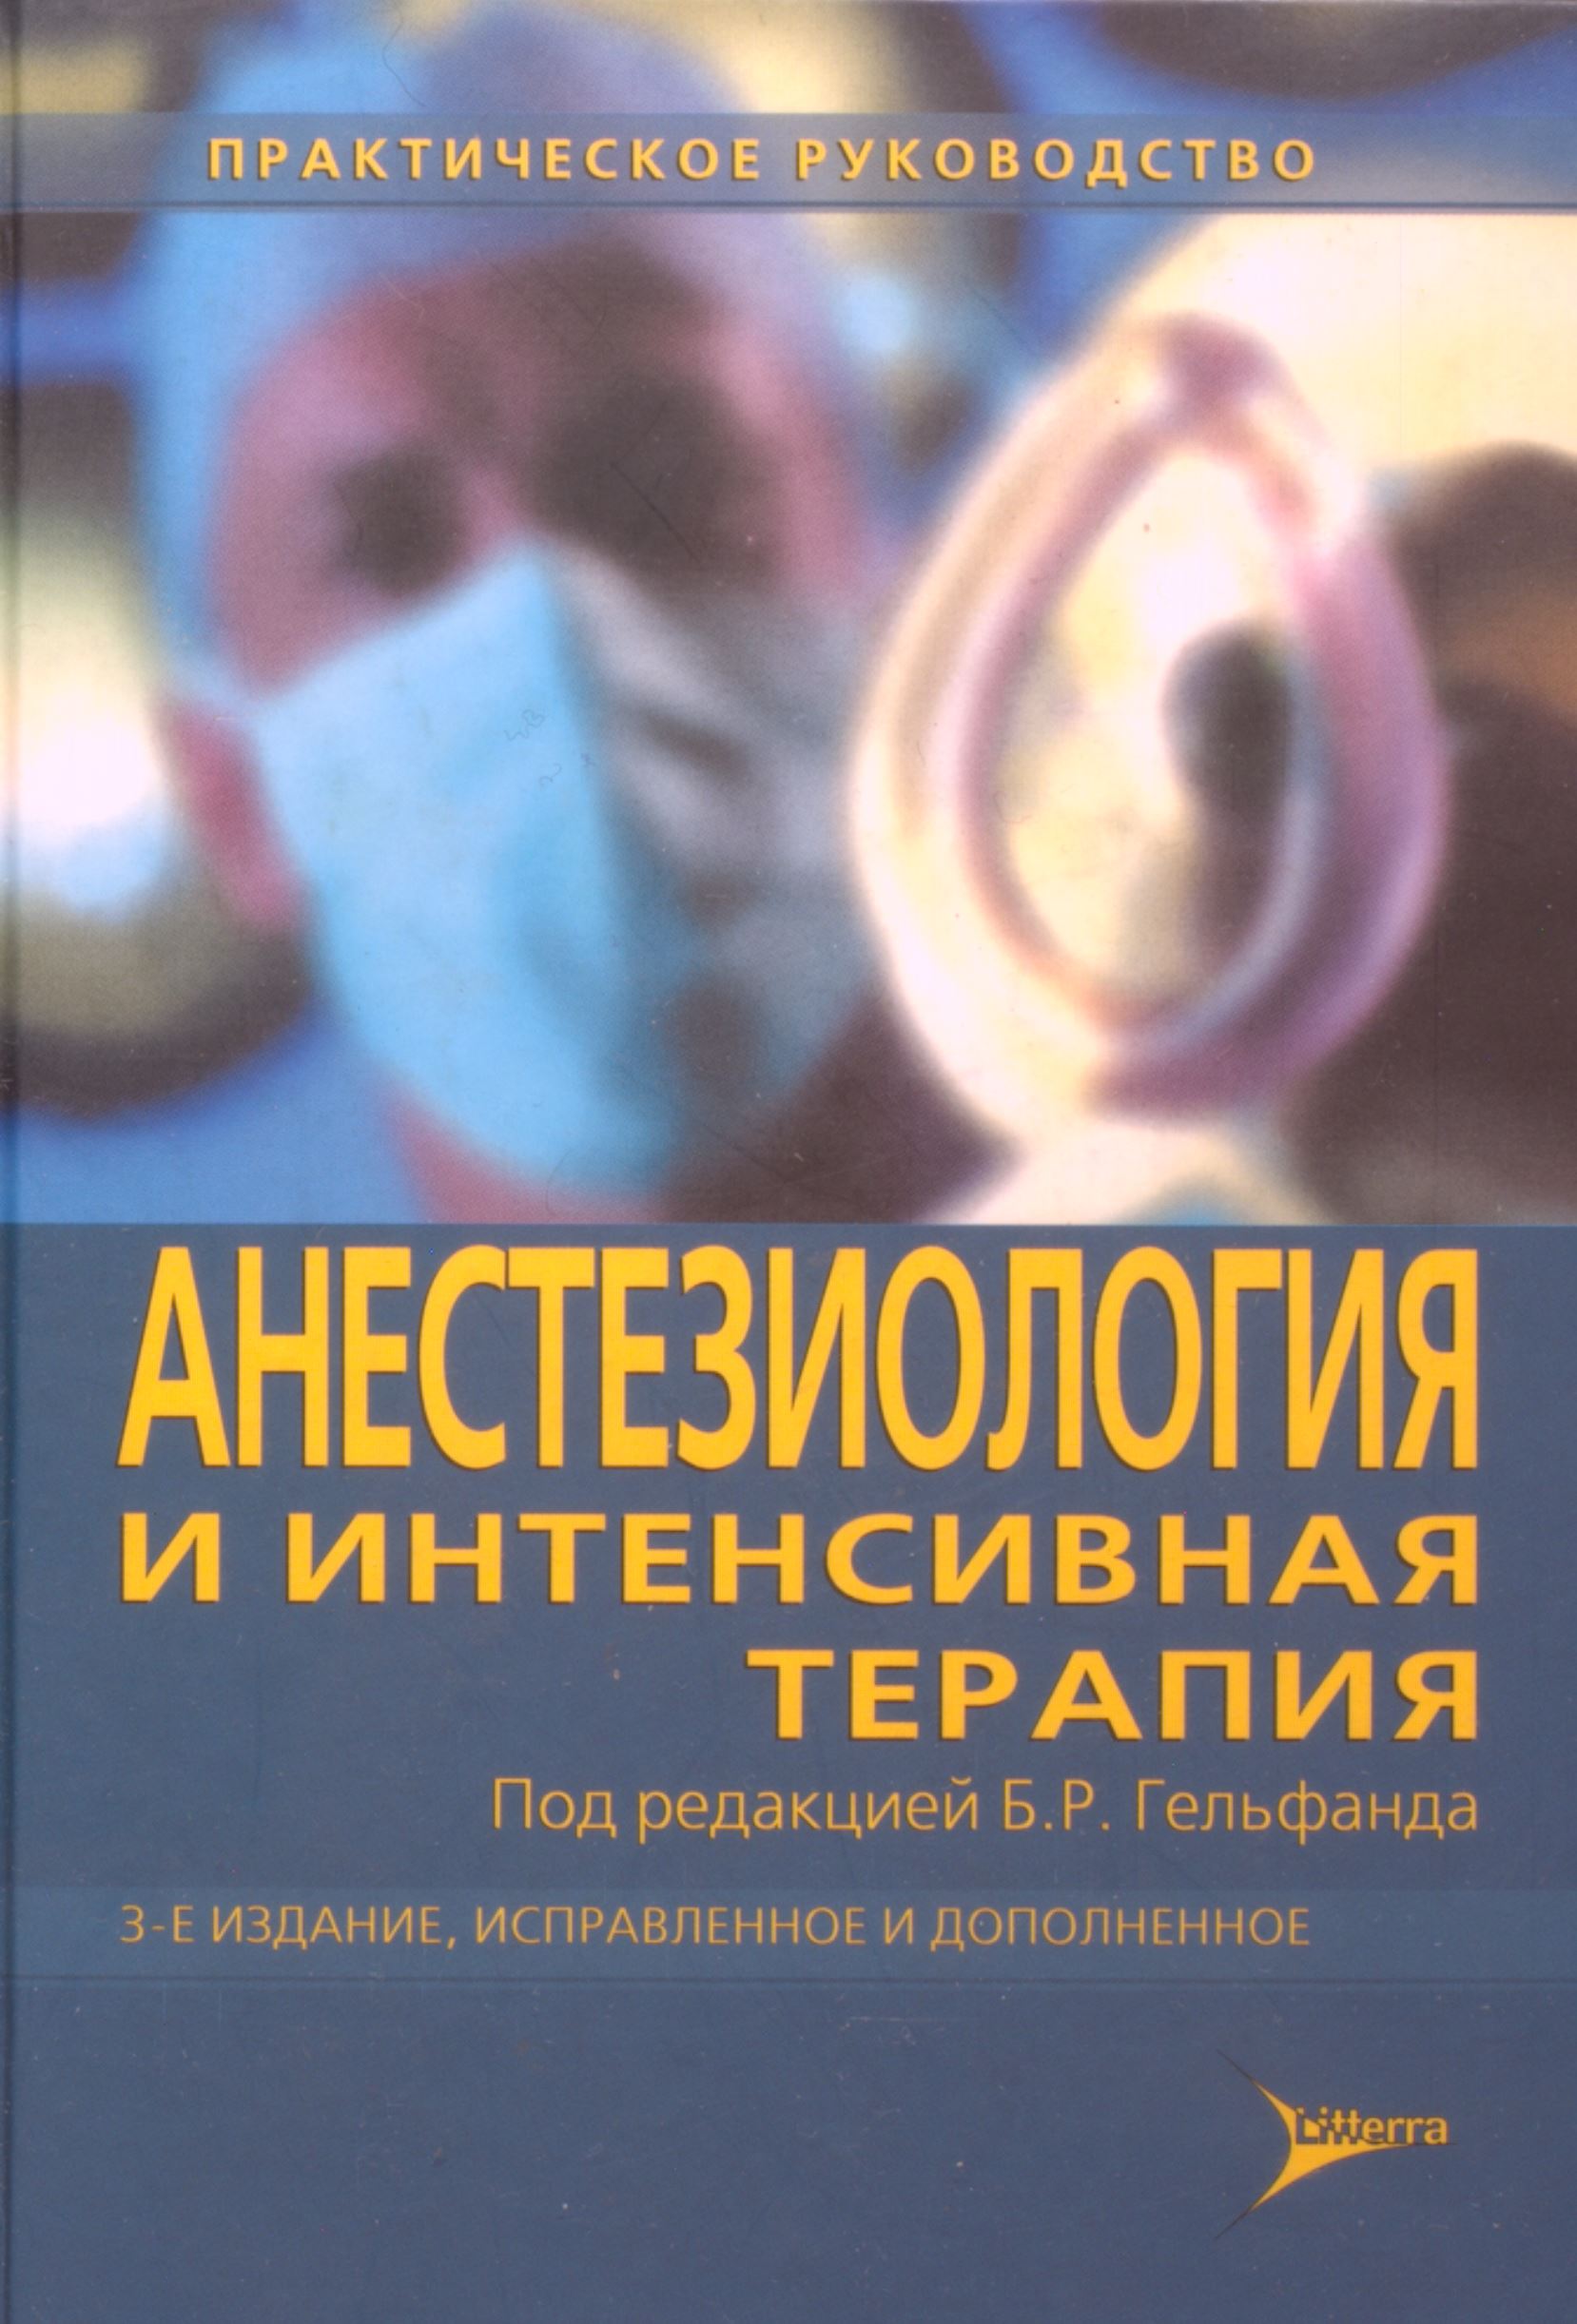 Анестезиология учебник. Гельфанд анестезиология и интенсивная терапия. Терапия и интенсивная терапия. Анестезия и интенсивная терапия. Интенсивная терапия книга.